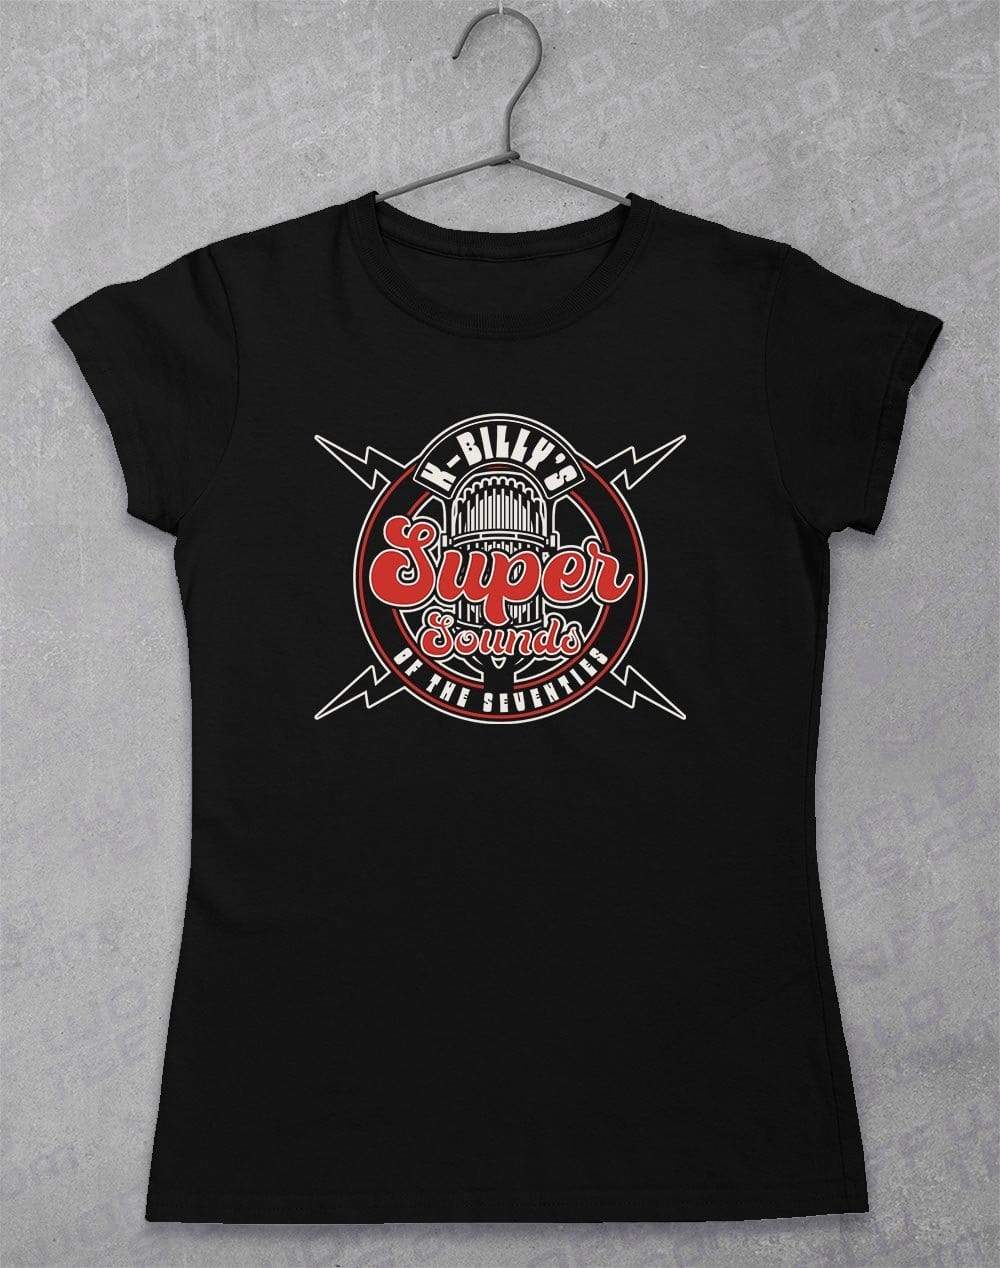 K-Billy's Super Sounds Women's T-Shirt 8-10 / Black  - Off World Tees